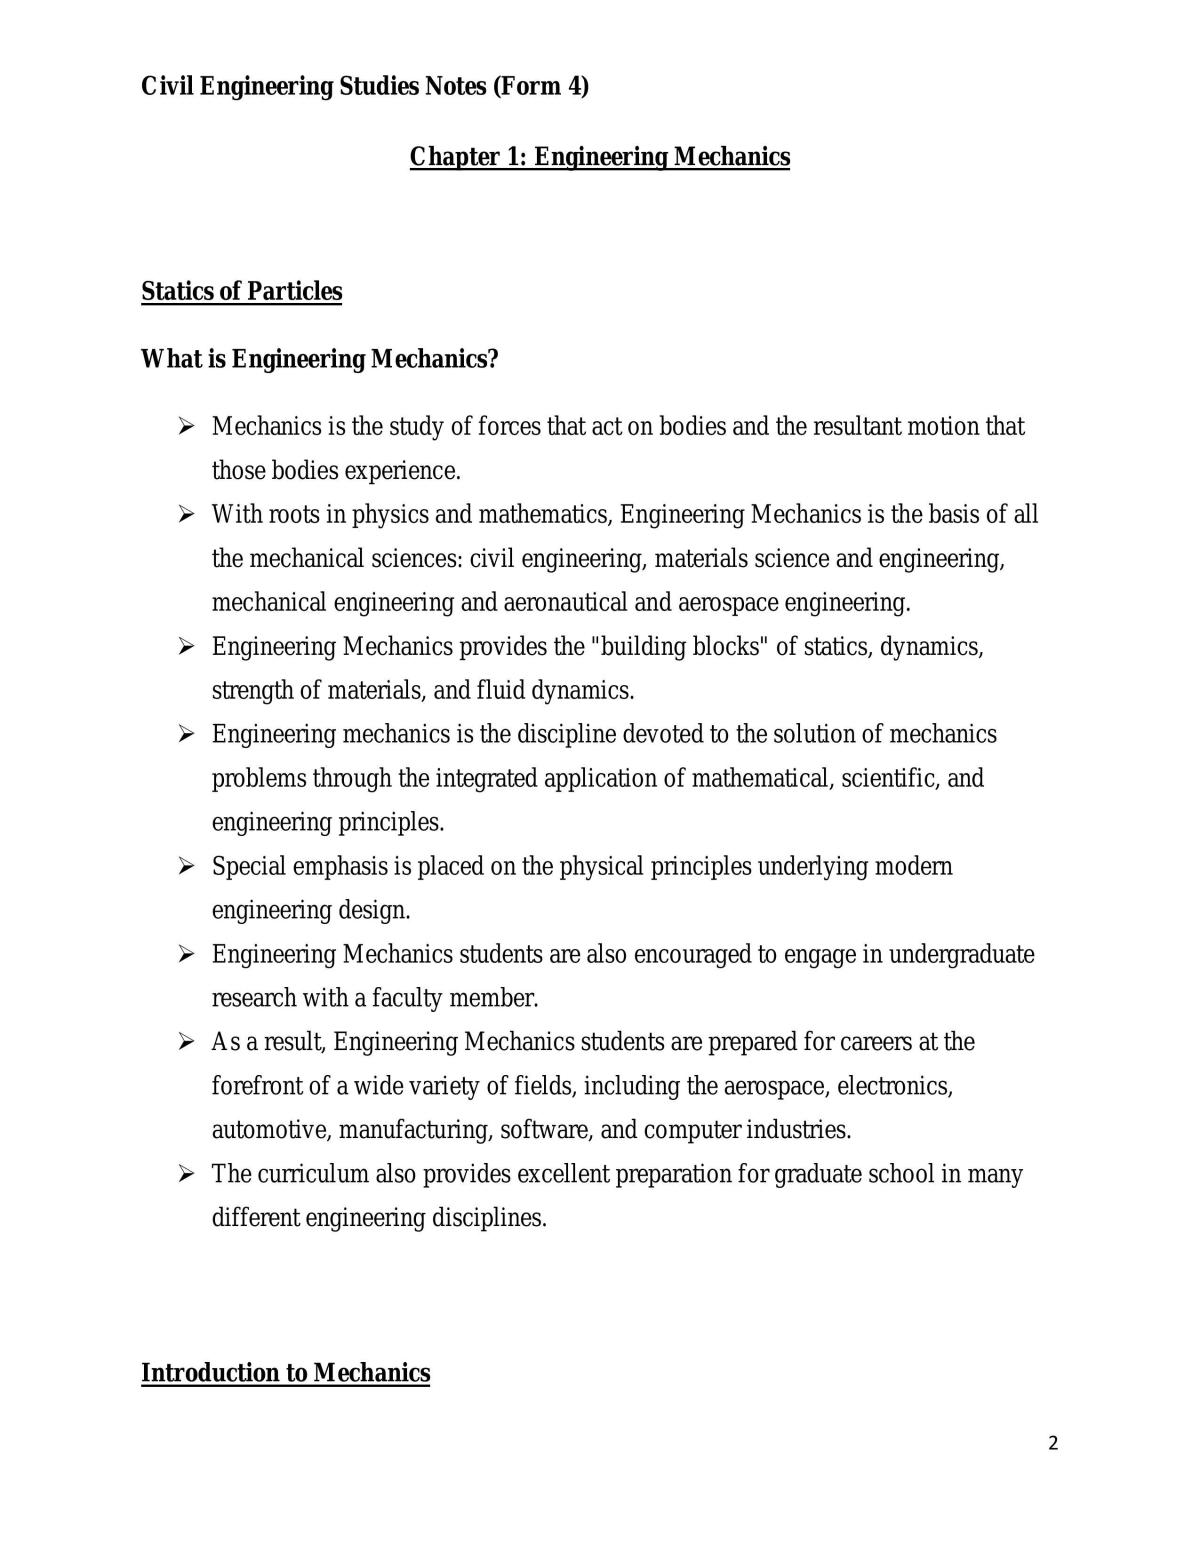 Civil Engineering Studies Notes  - Page 2